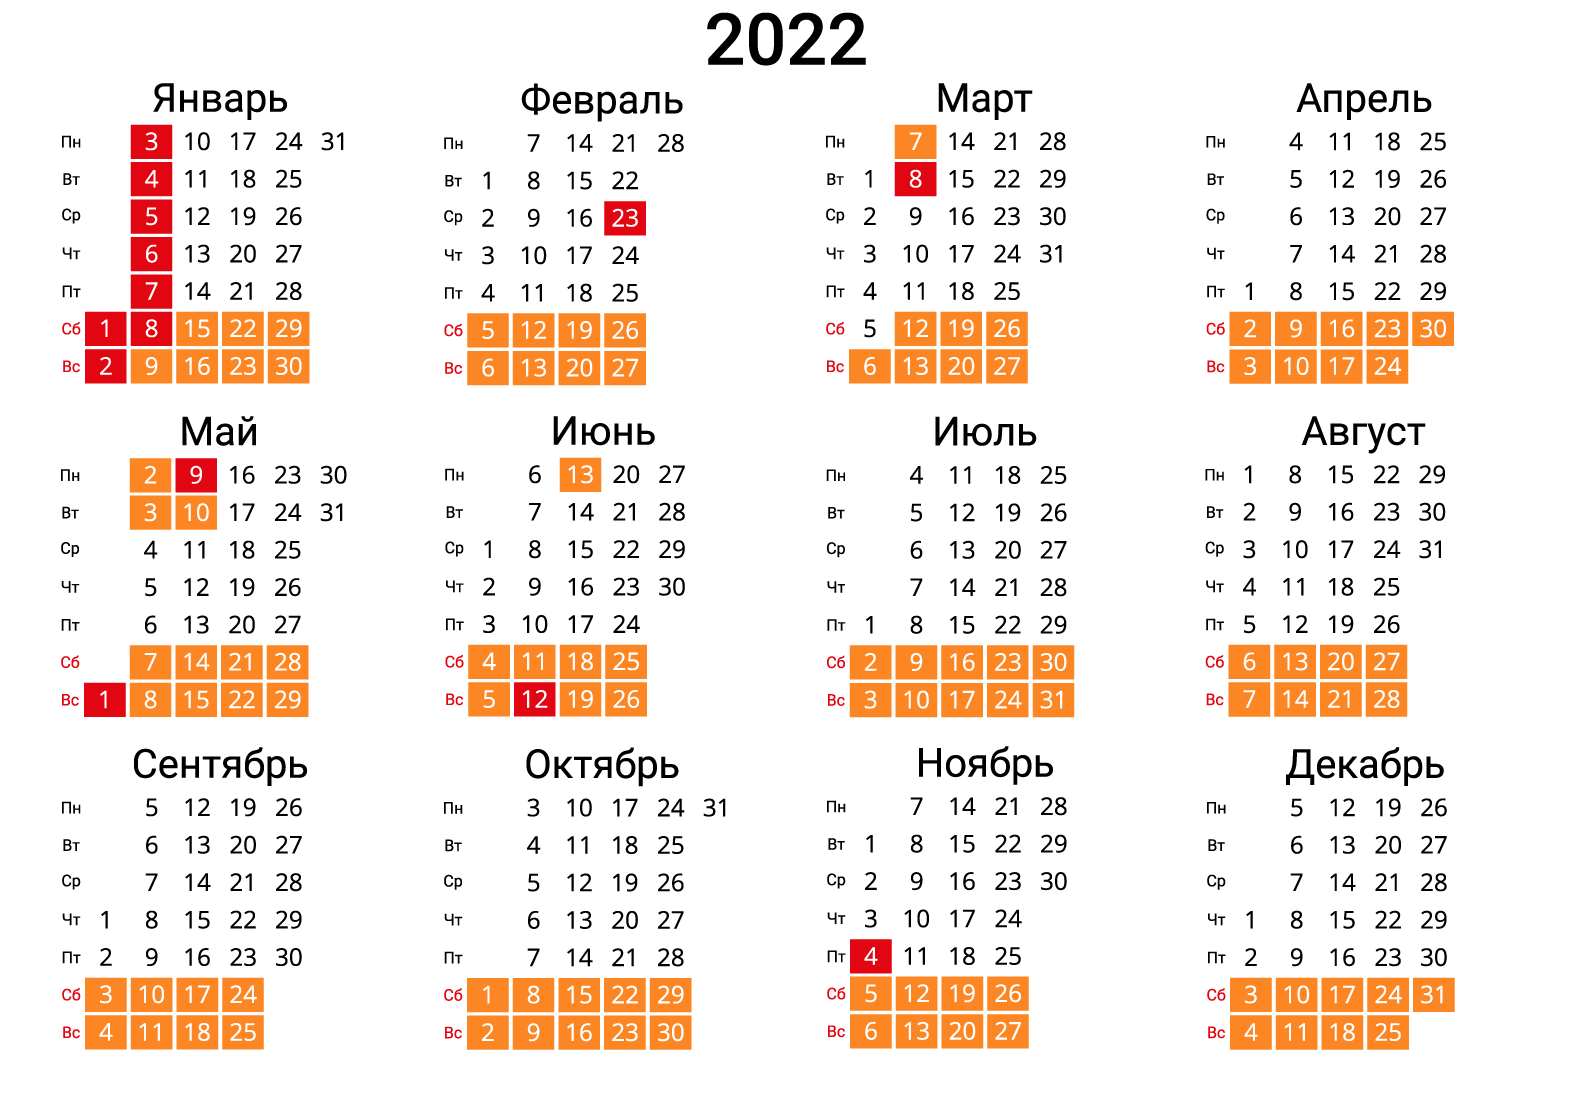 Календарь праздники 23 24 год. Календарь на 2022 год дни недели сбоку. Календарь на 2022 год с праздниками и выходными выходные снизу Россия. Производственный календарь на 2022 год дни недели сбоку. Календарь 2022 дни недели сбоку производственный.